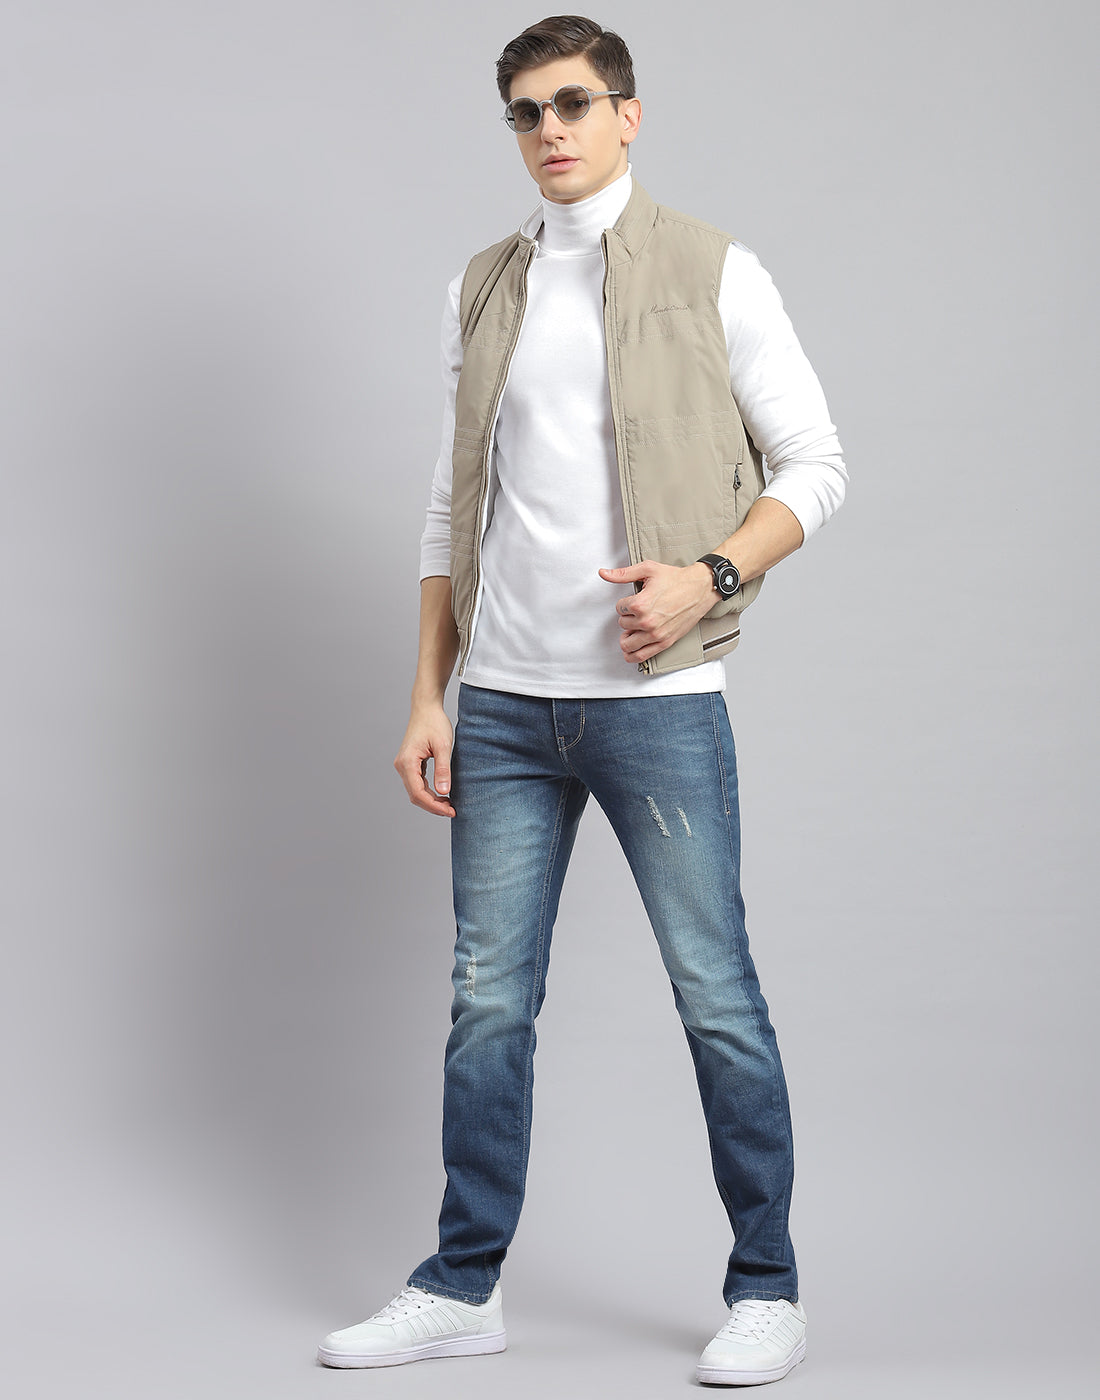 Men's Down Vest Sleeveless Windbreaker Jacket Top Coat Zip Up Puffer Stand  Collar Sport Jackets with Pocket